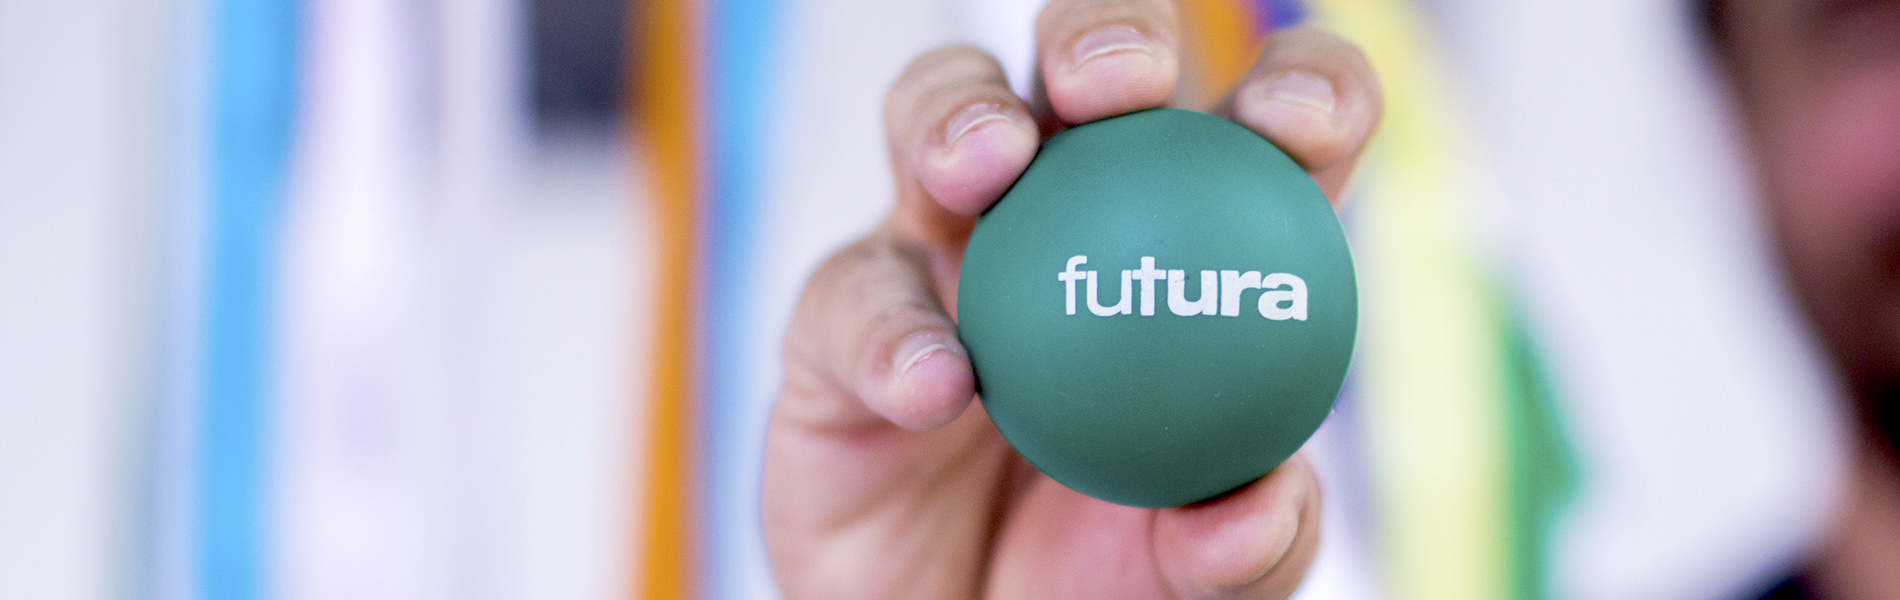 Imagem de mão segurando uma bola verde com a logomarca do Canal Futura.